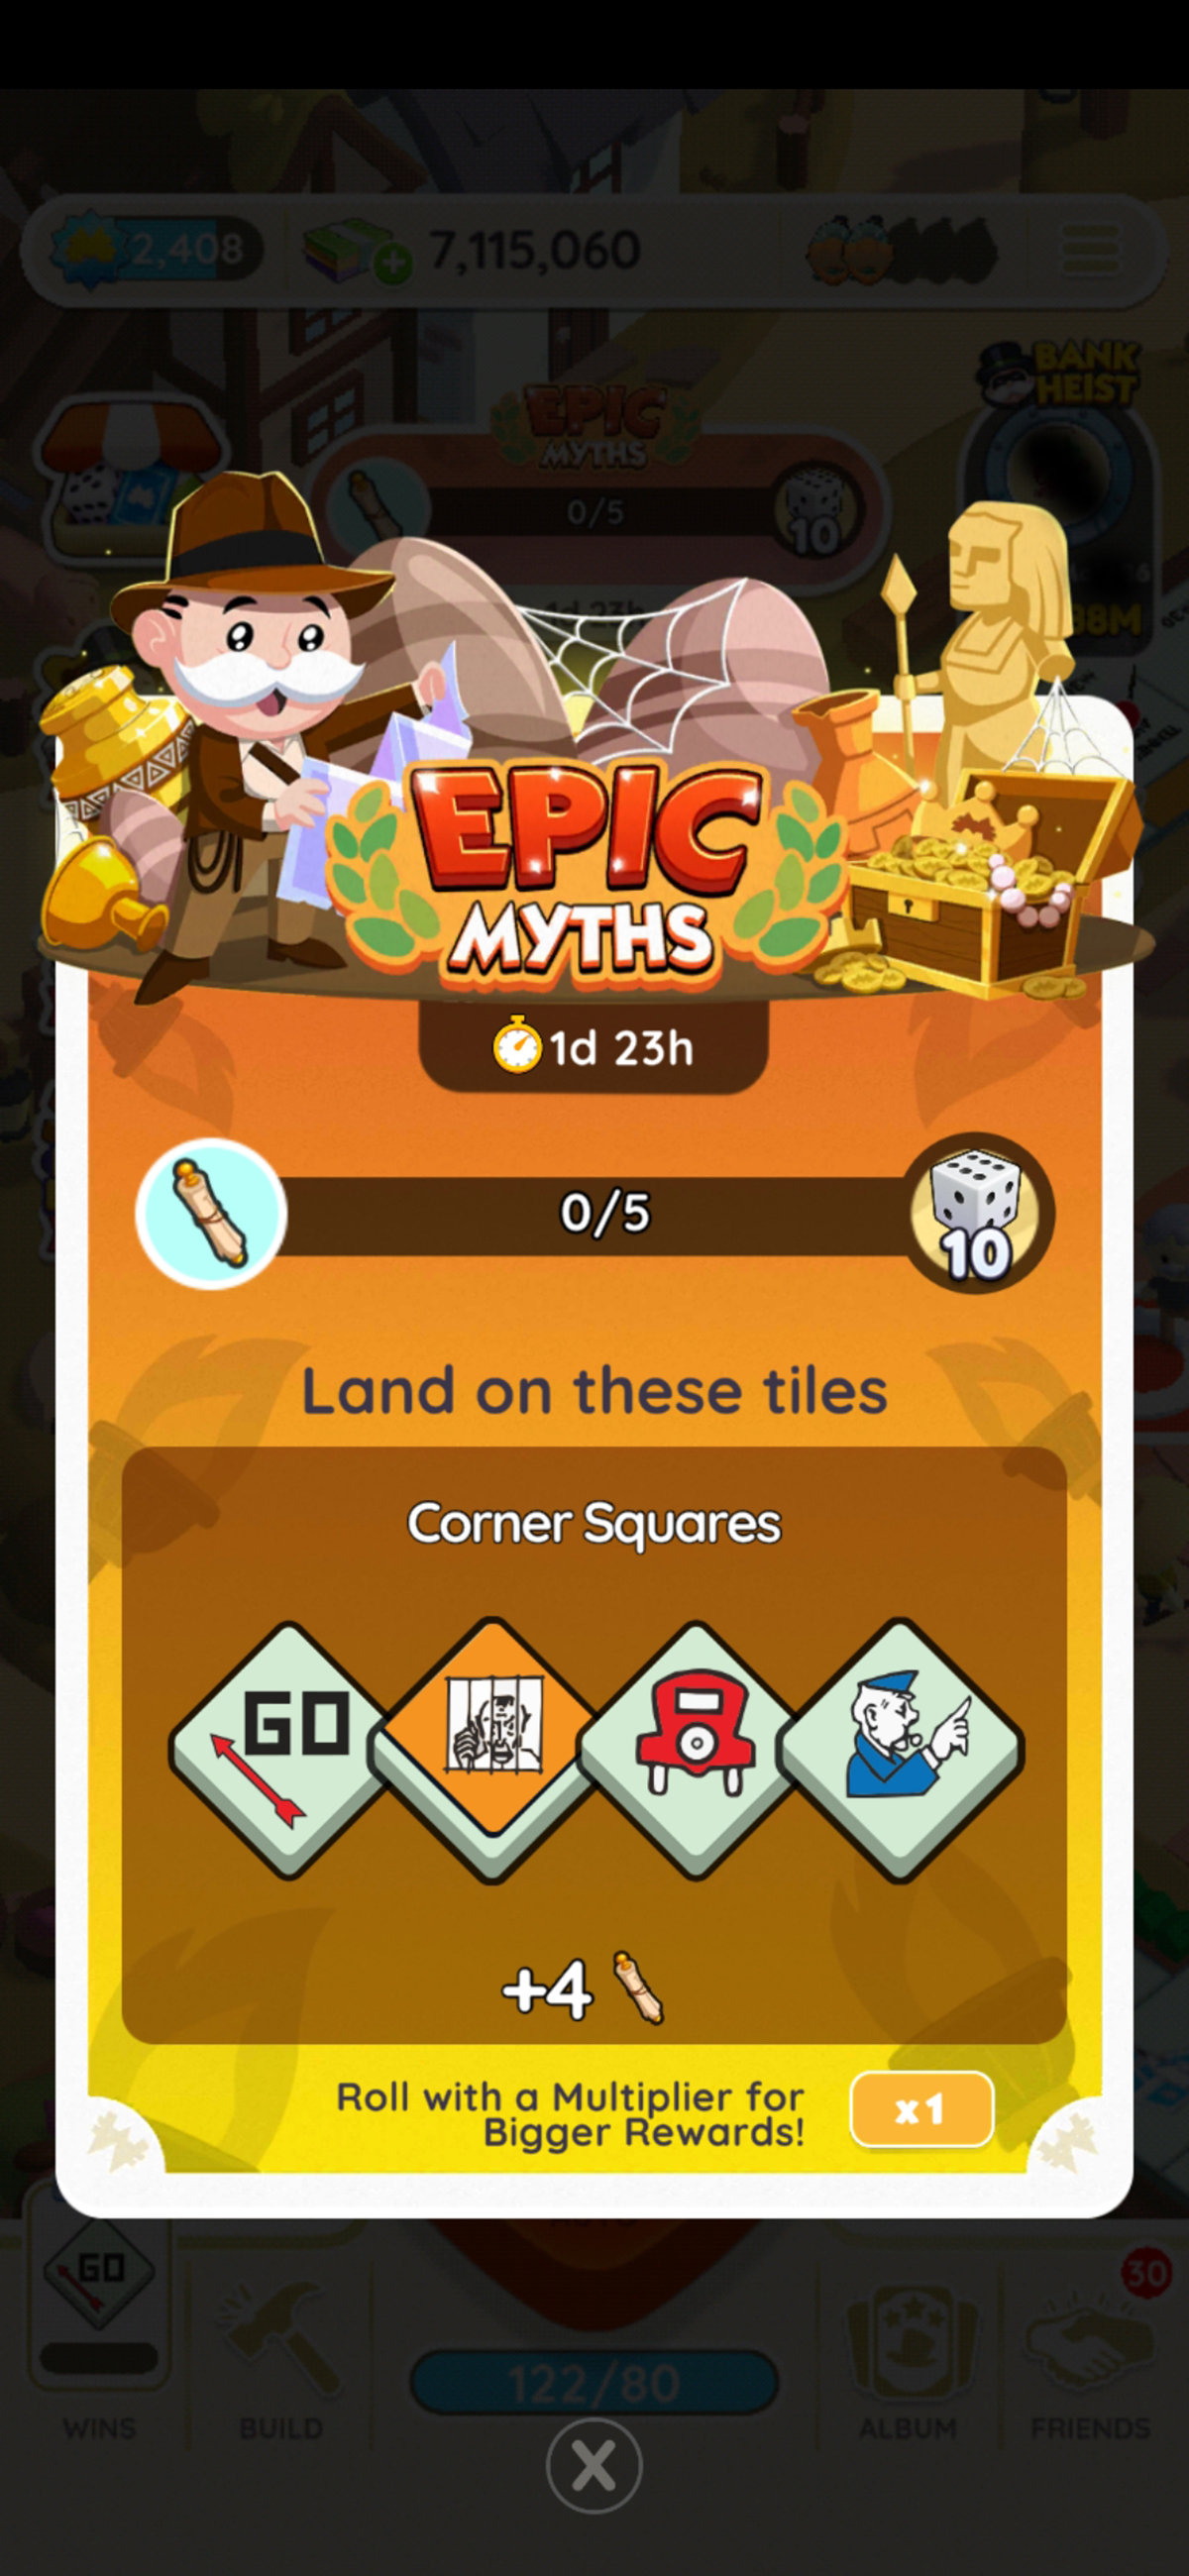 Un en-tête pour l'événement Epic Myths dans Monopoly GO dans le cadre d'un guide de tous les prix, jalons, récompenses disponibles pour l'événement, comment jouer et comment gagner.